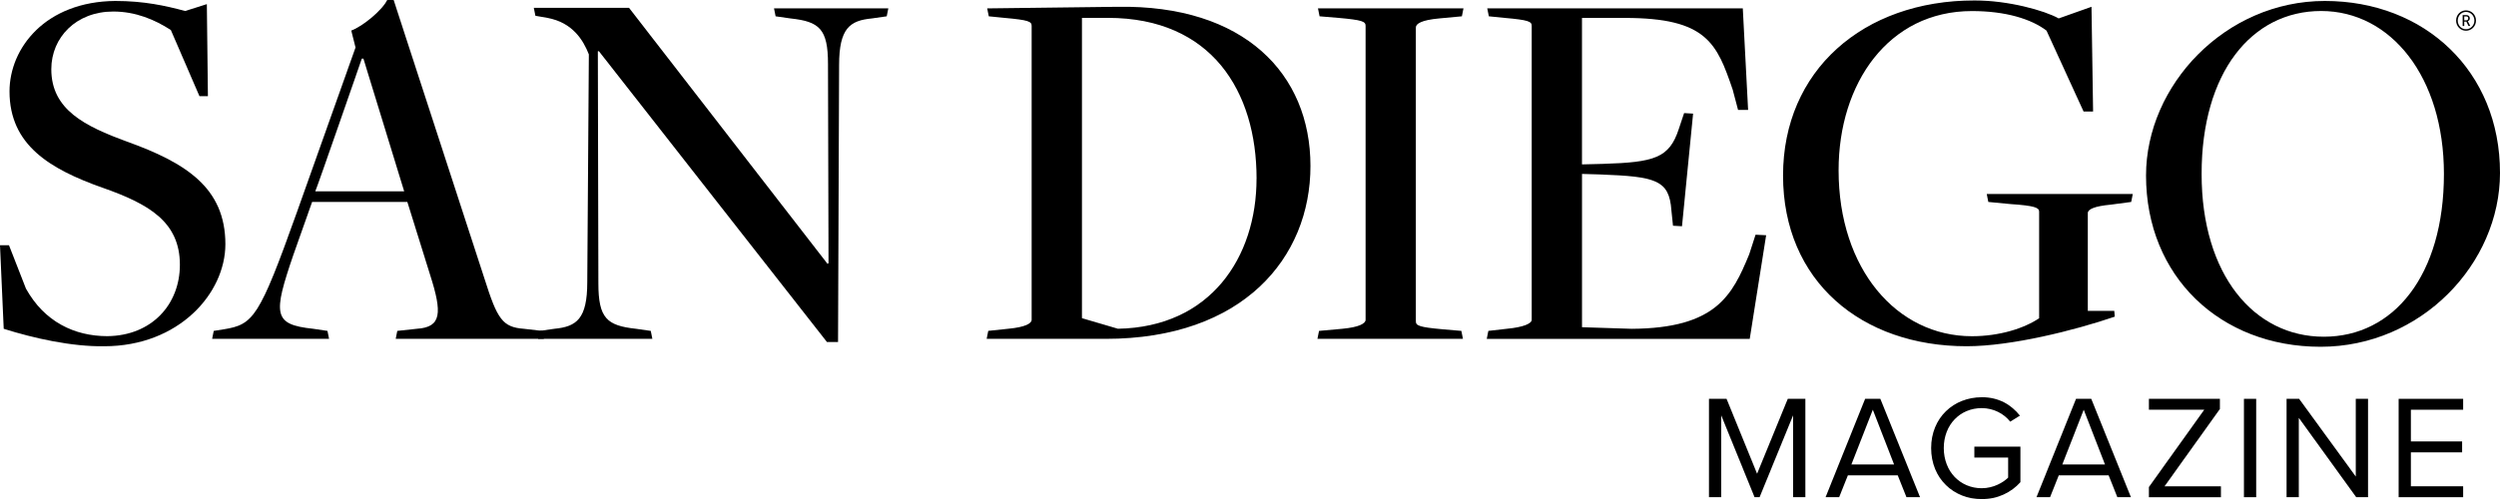 sdm-black-logo-mag-header.png